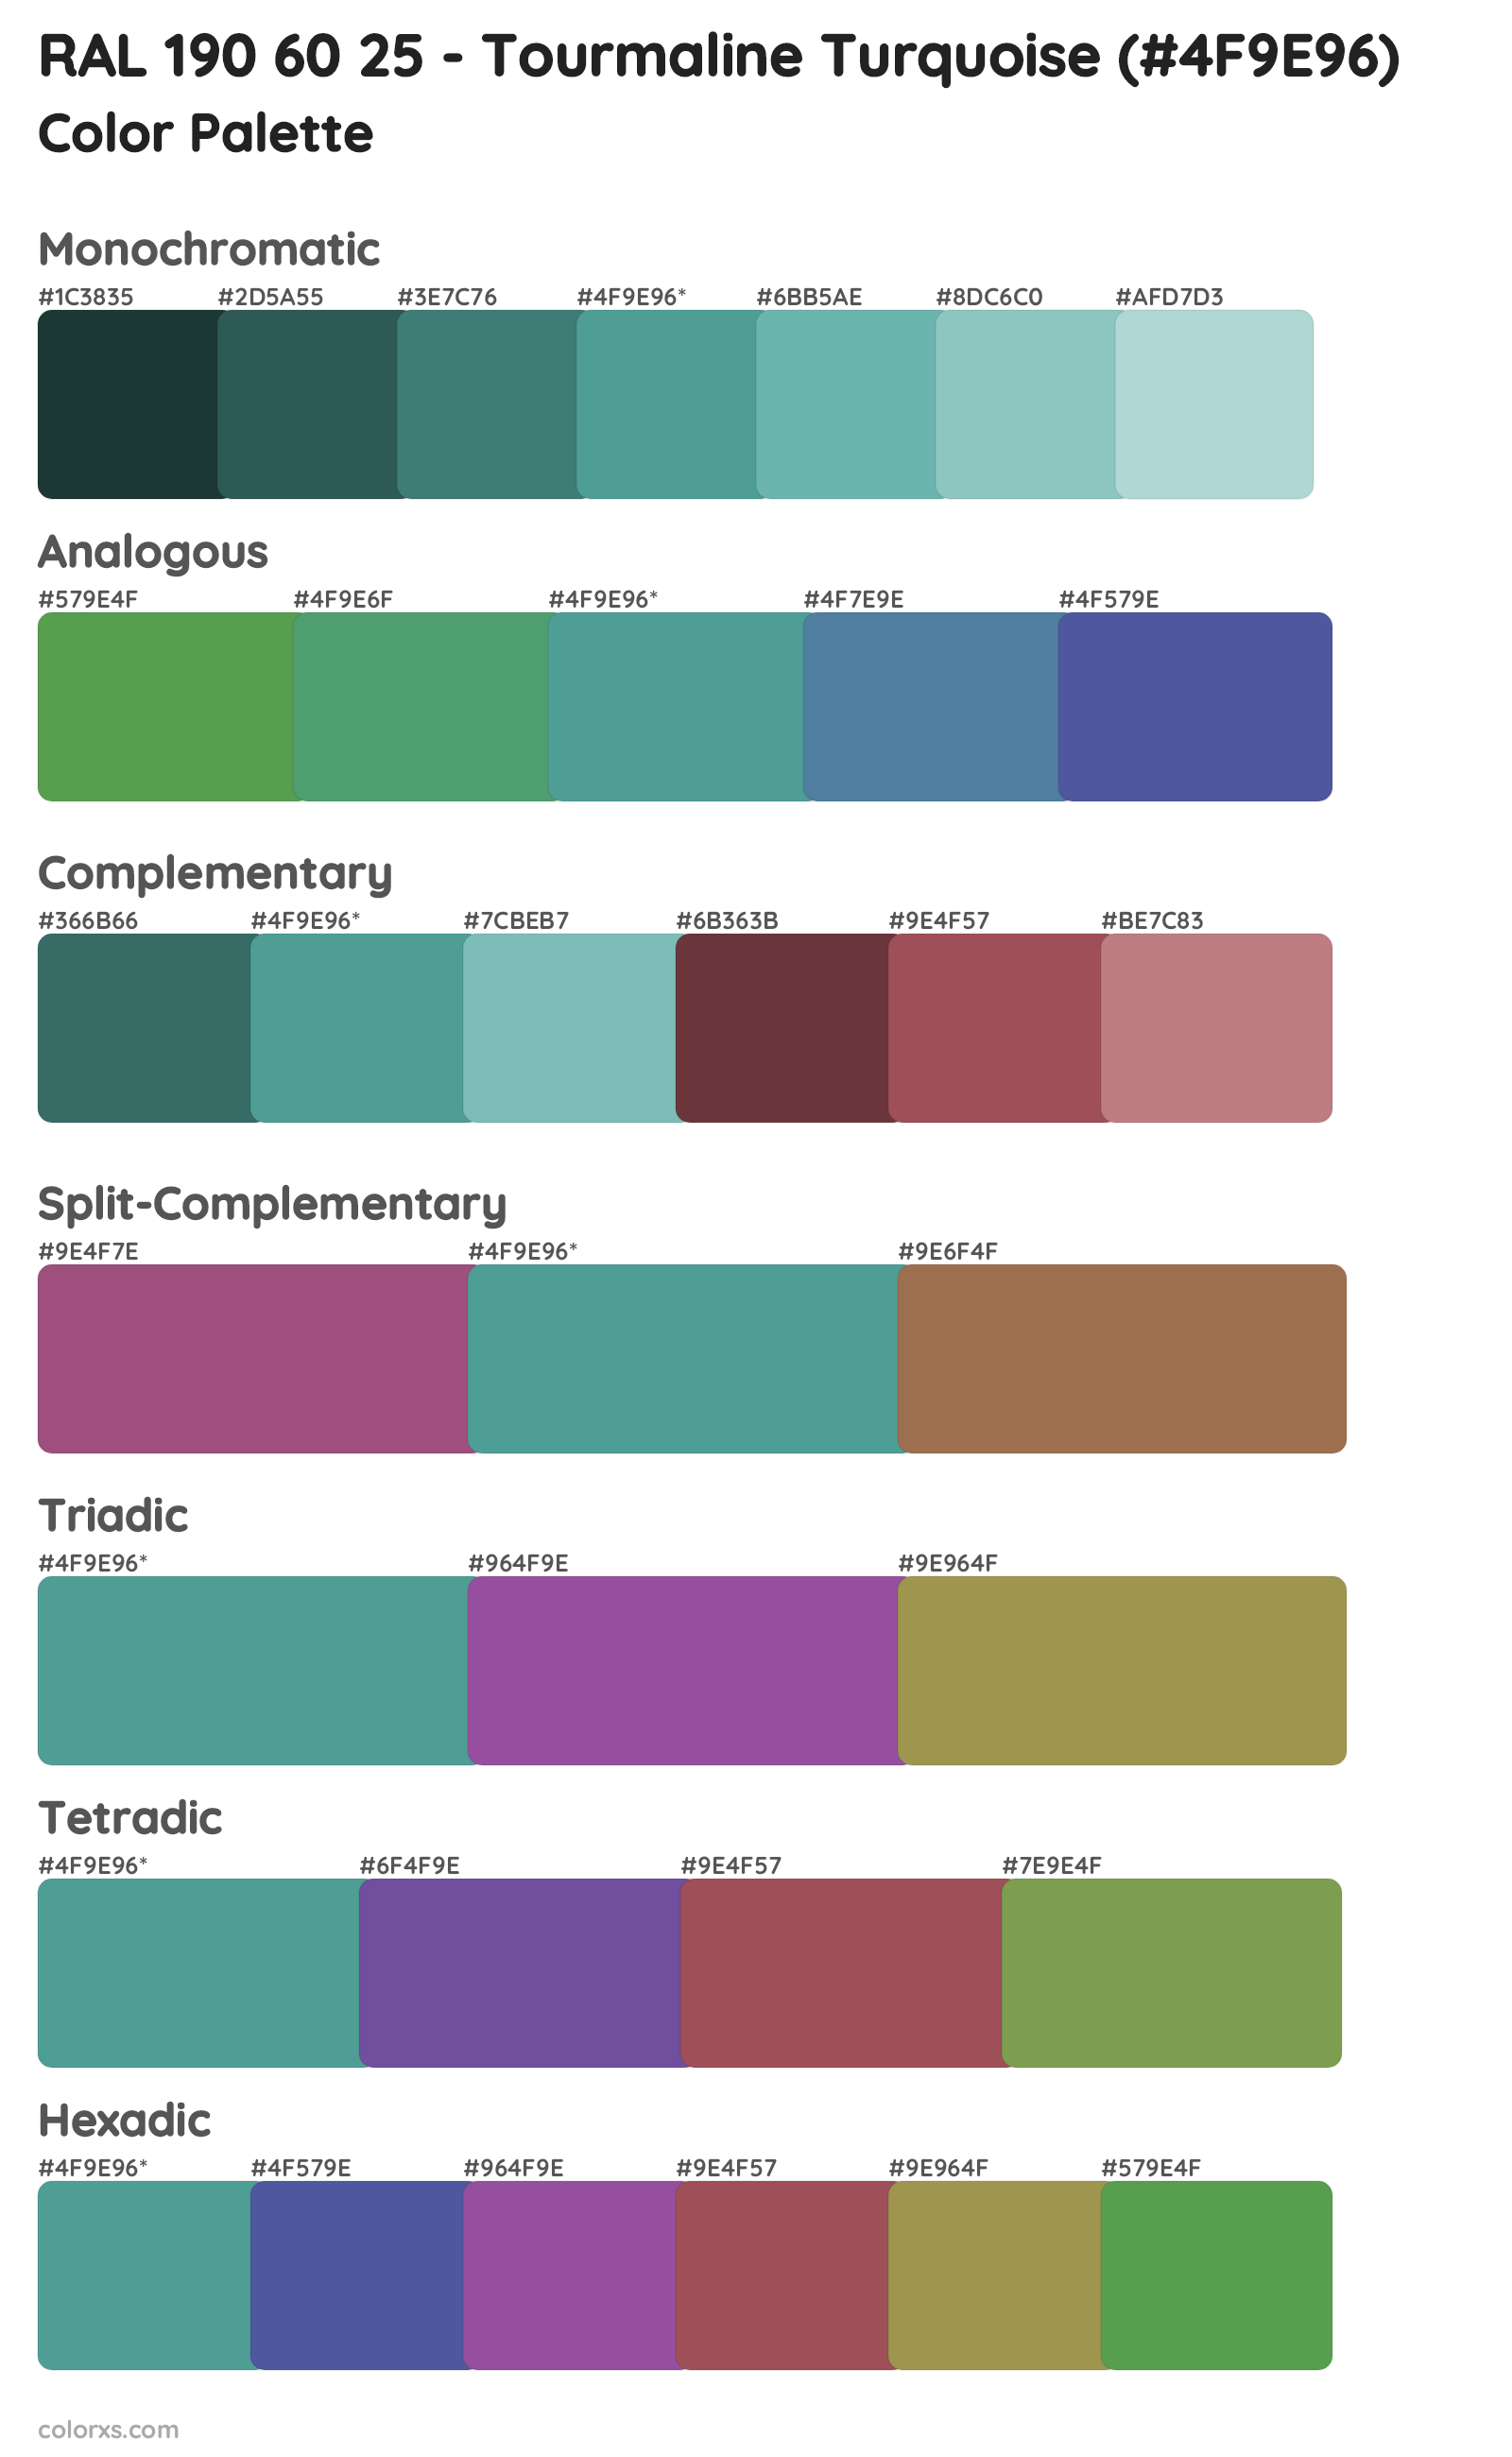 RAL 190 60 25 - Tourmaline Turquoise Color Scheme Palettes